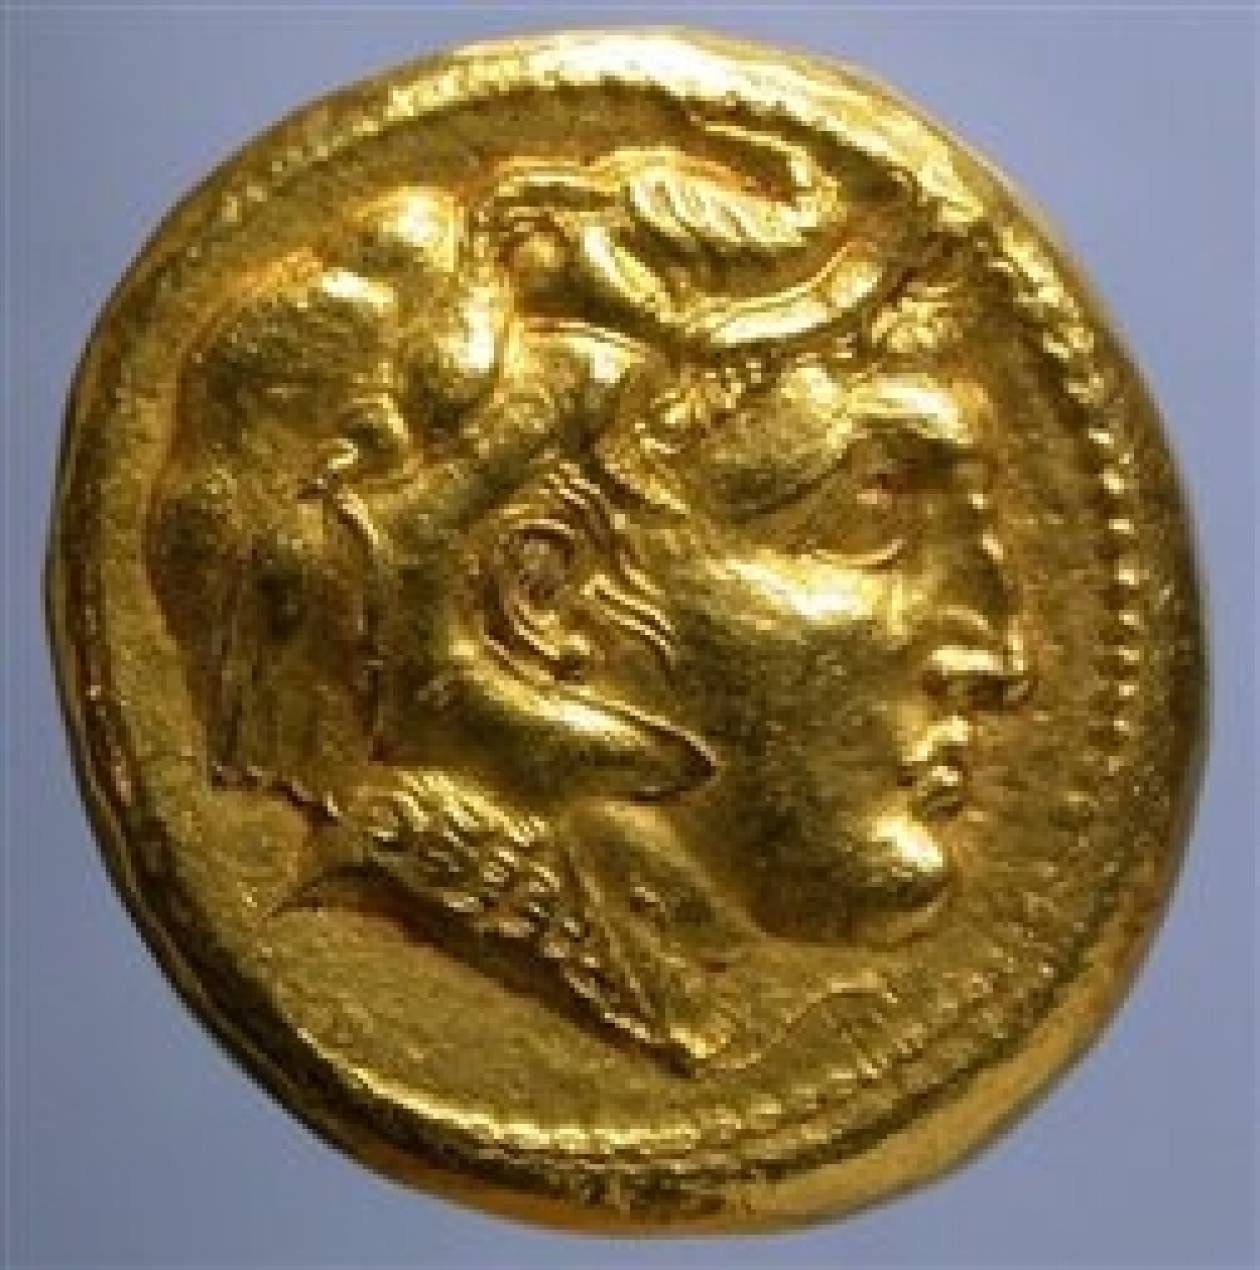 Στο φως μοναδικό χρυσό νόμισμα με το πορτραίτο του Μεγάλου Αλεξάνδρου